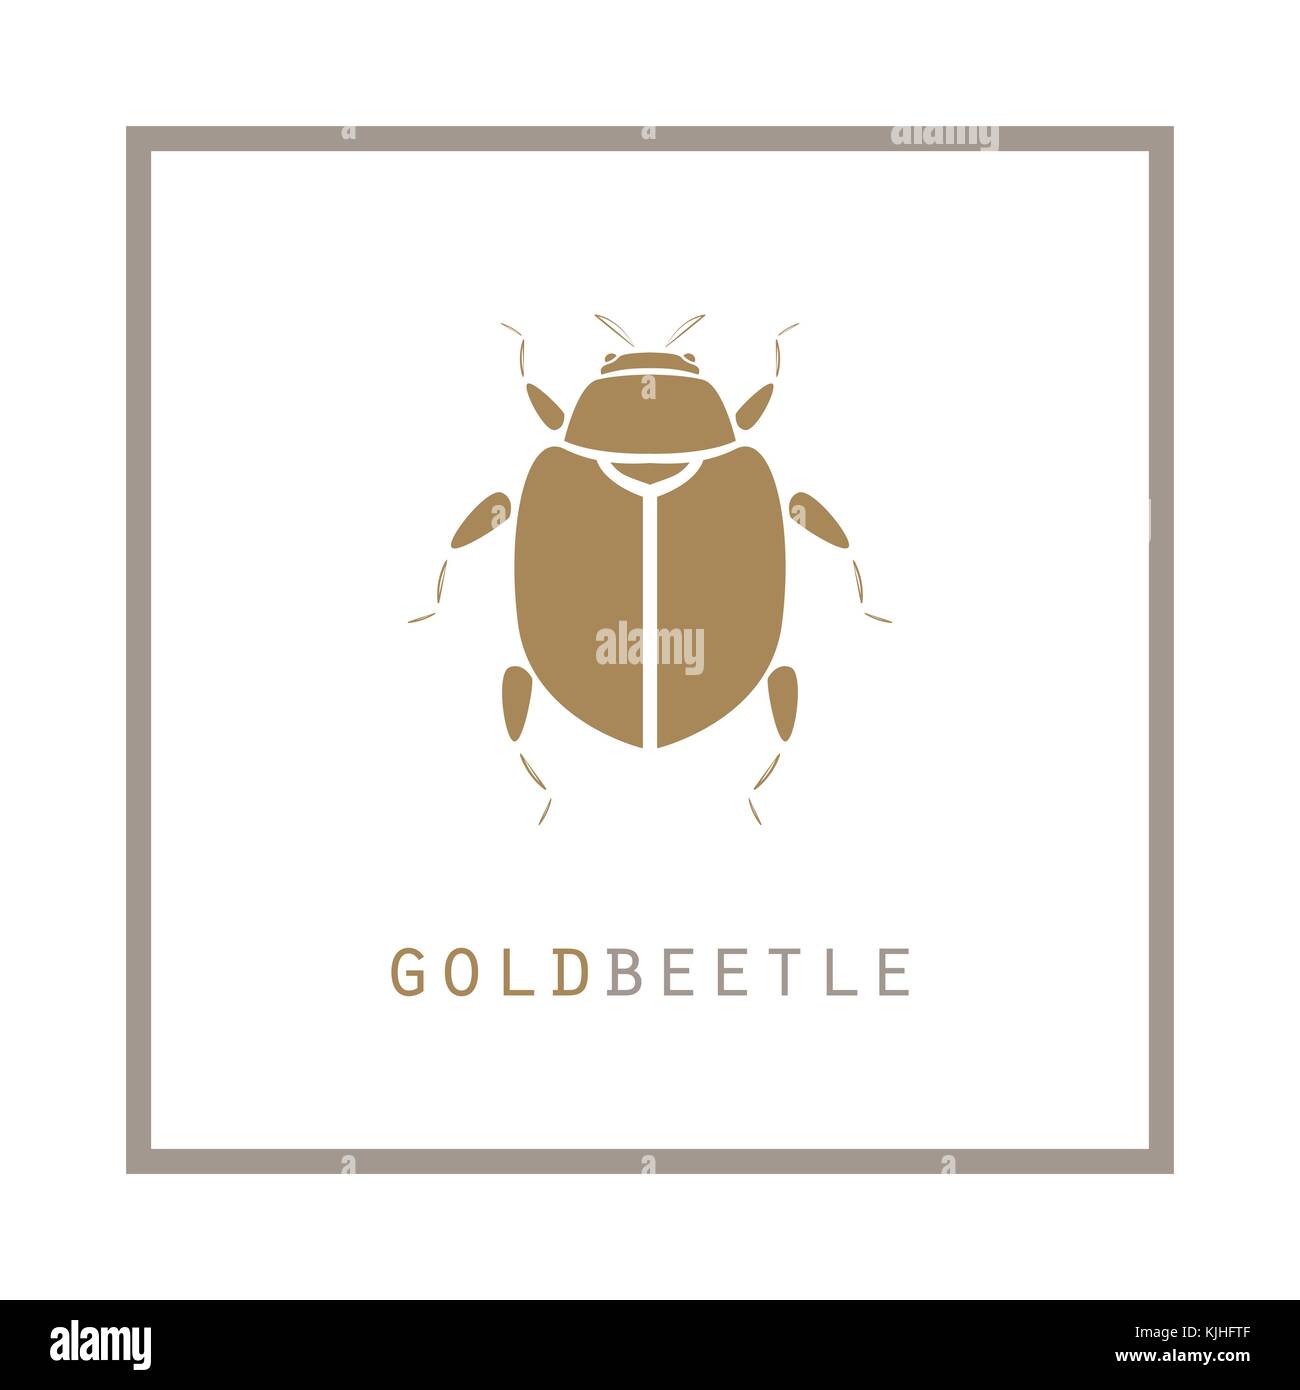 Gold beetle in a frame vector illustration emblem. Stock Vector